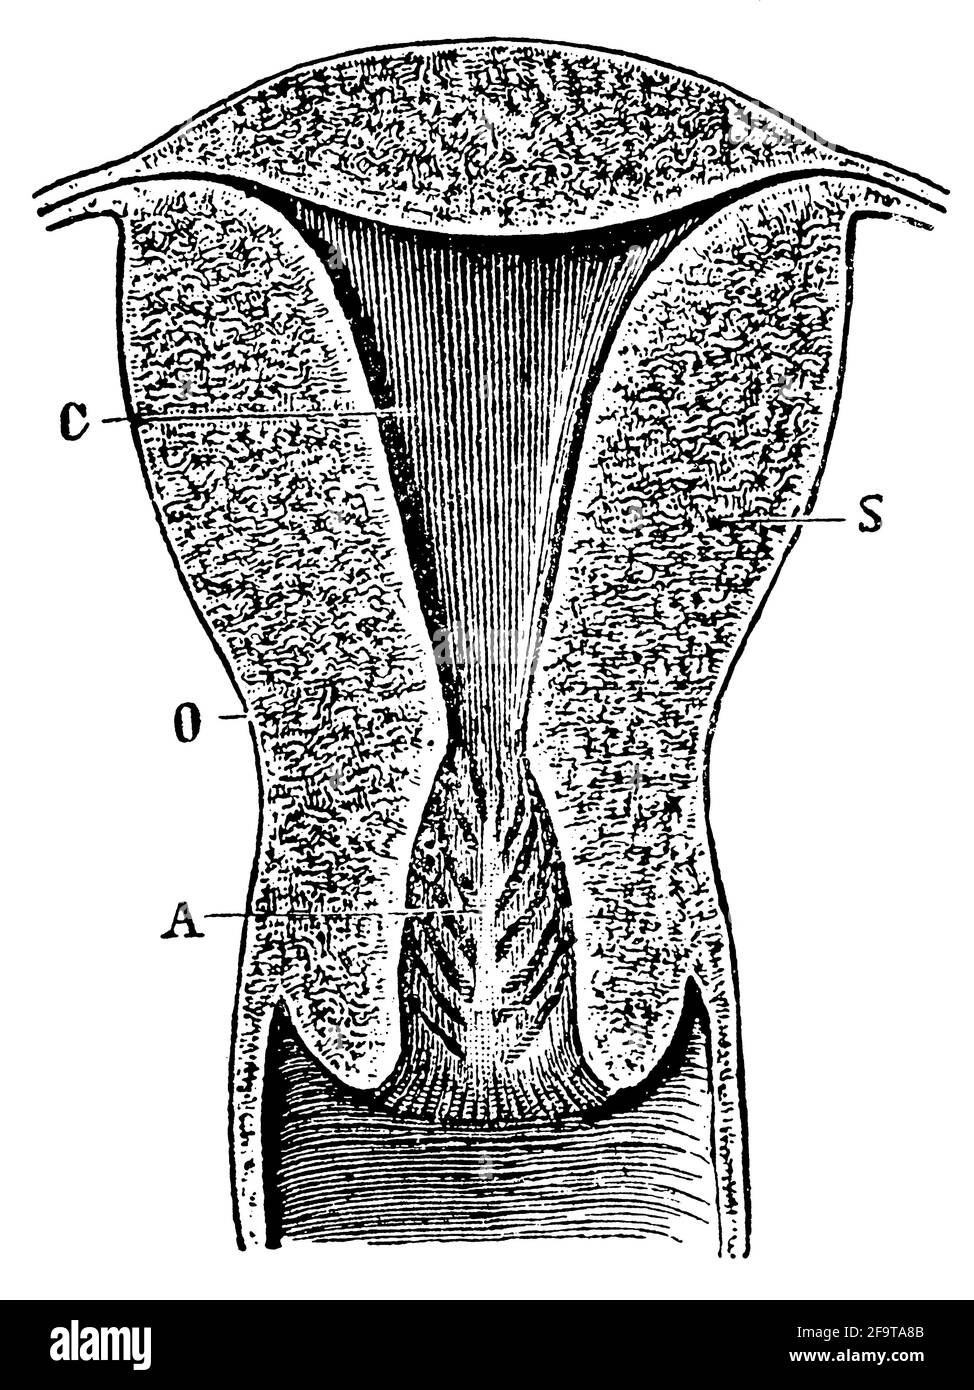 Section verticale à travers l'utérus d'une femme qui a donné naissance. Illustration du 19e siècle. Allemagne. Arrière-plan blanc. Banque D'Images